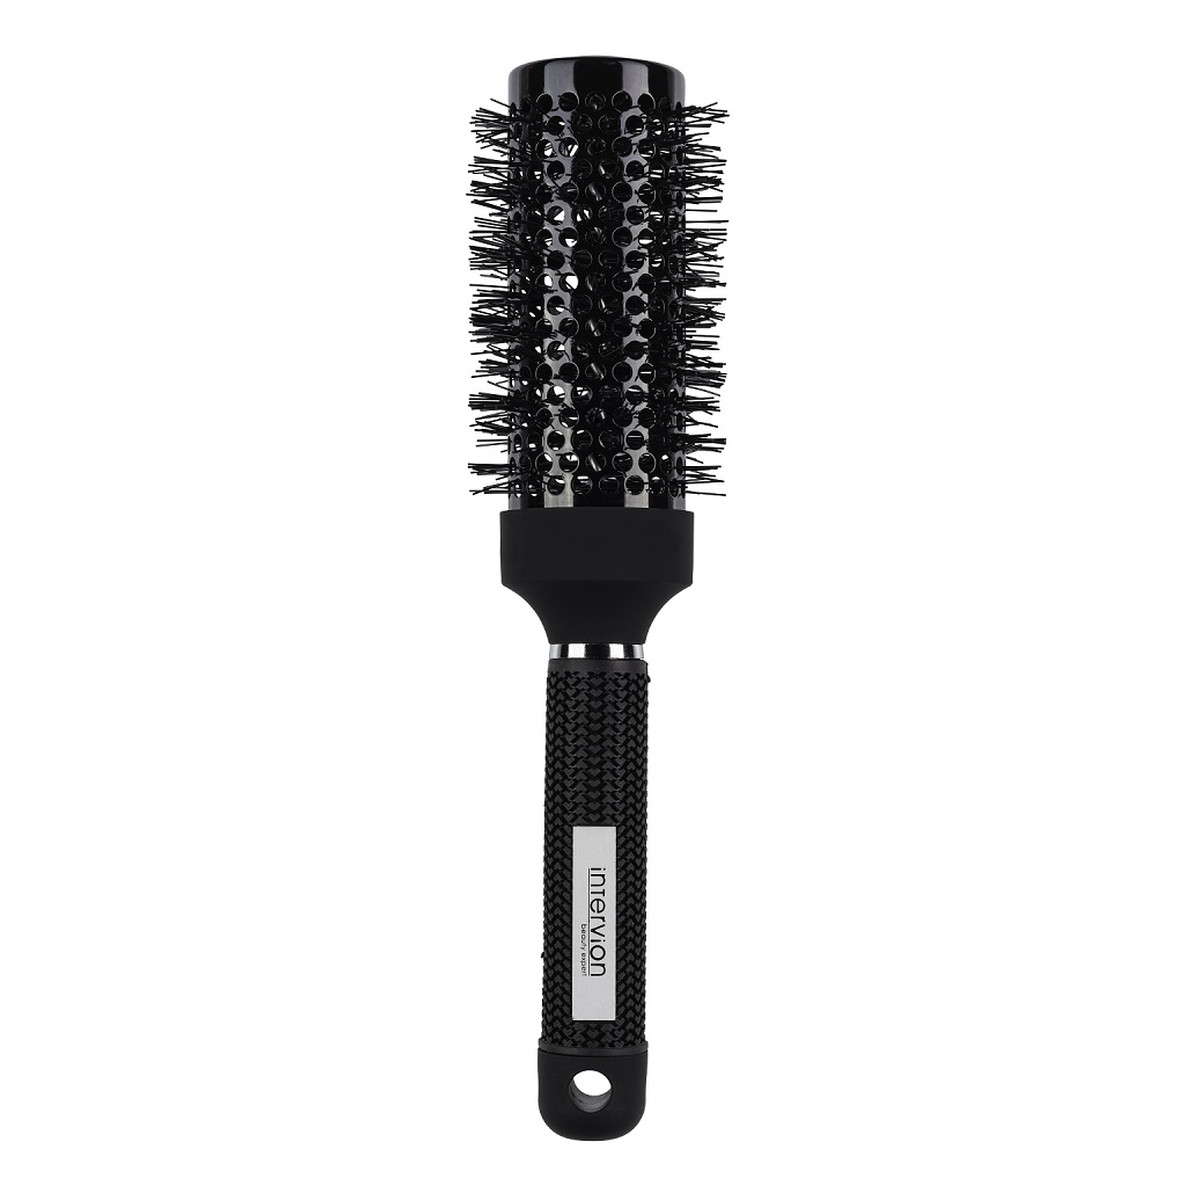 Inter-vion Black Label Ceramic Hair Brush szczotka do modelowania włosów 45MM